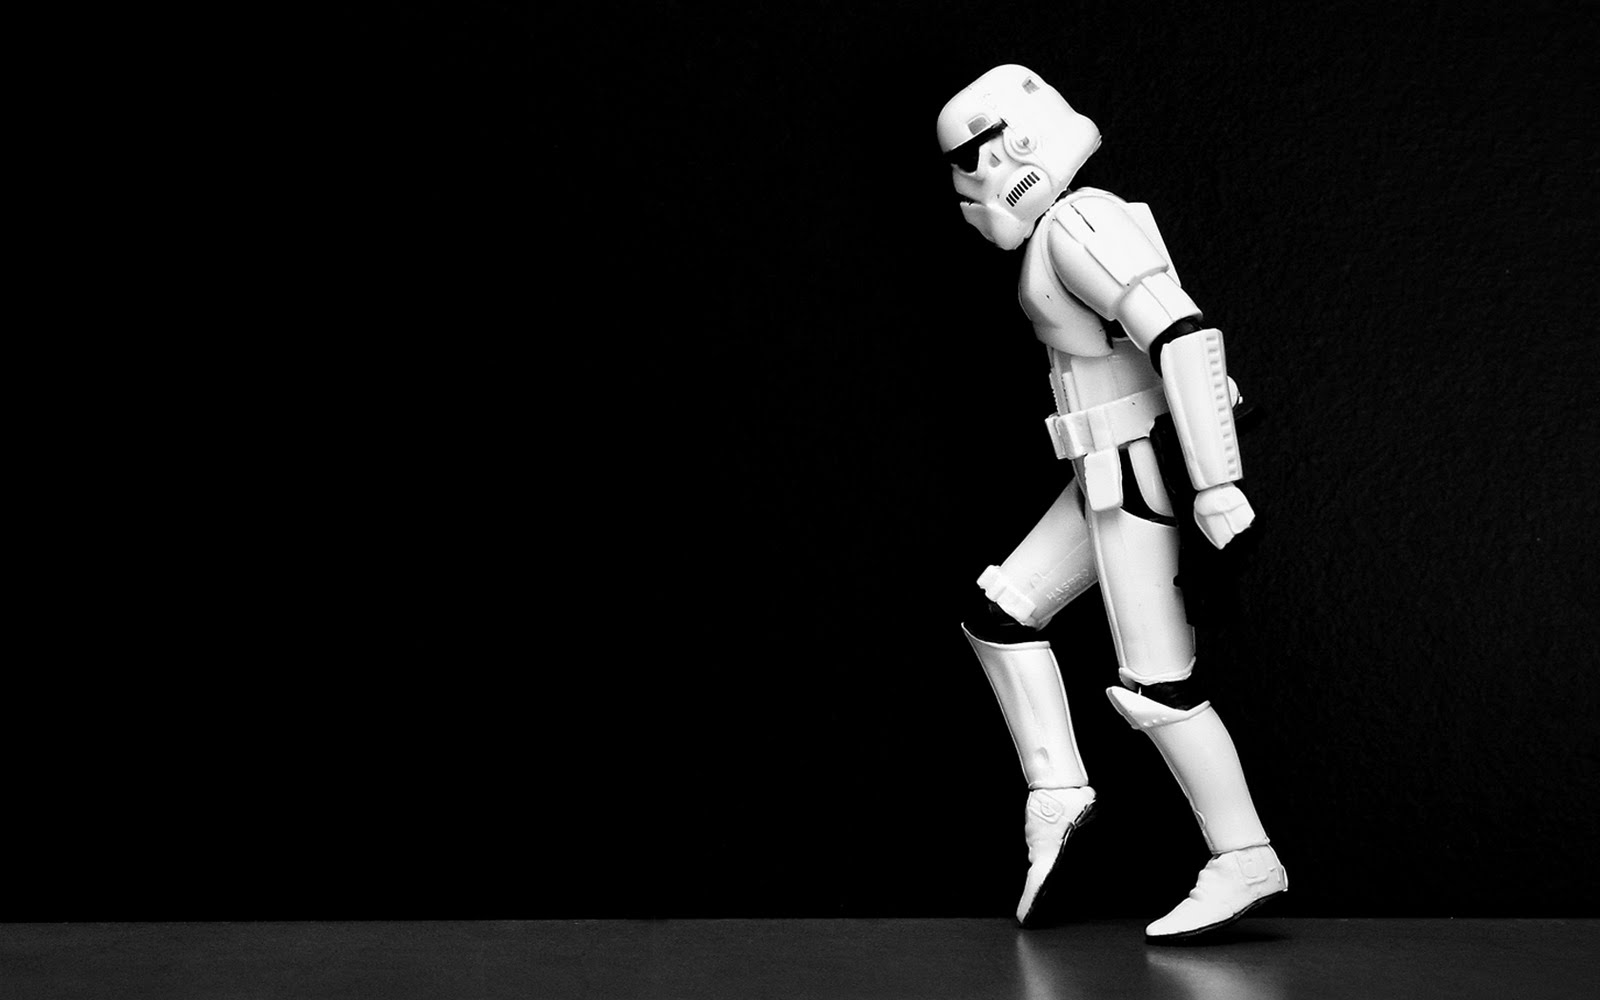 Star Wars Stormtrooper Figurine Toy 1600x1000